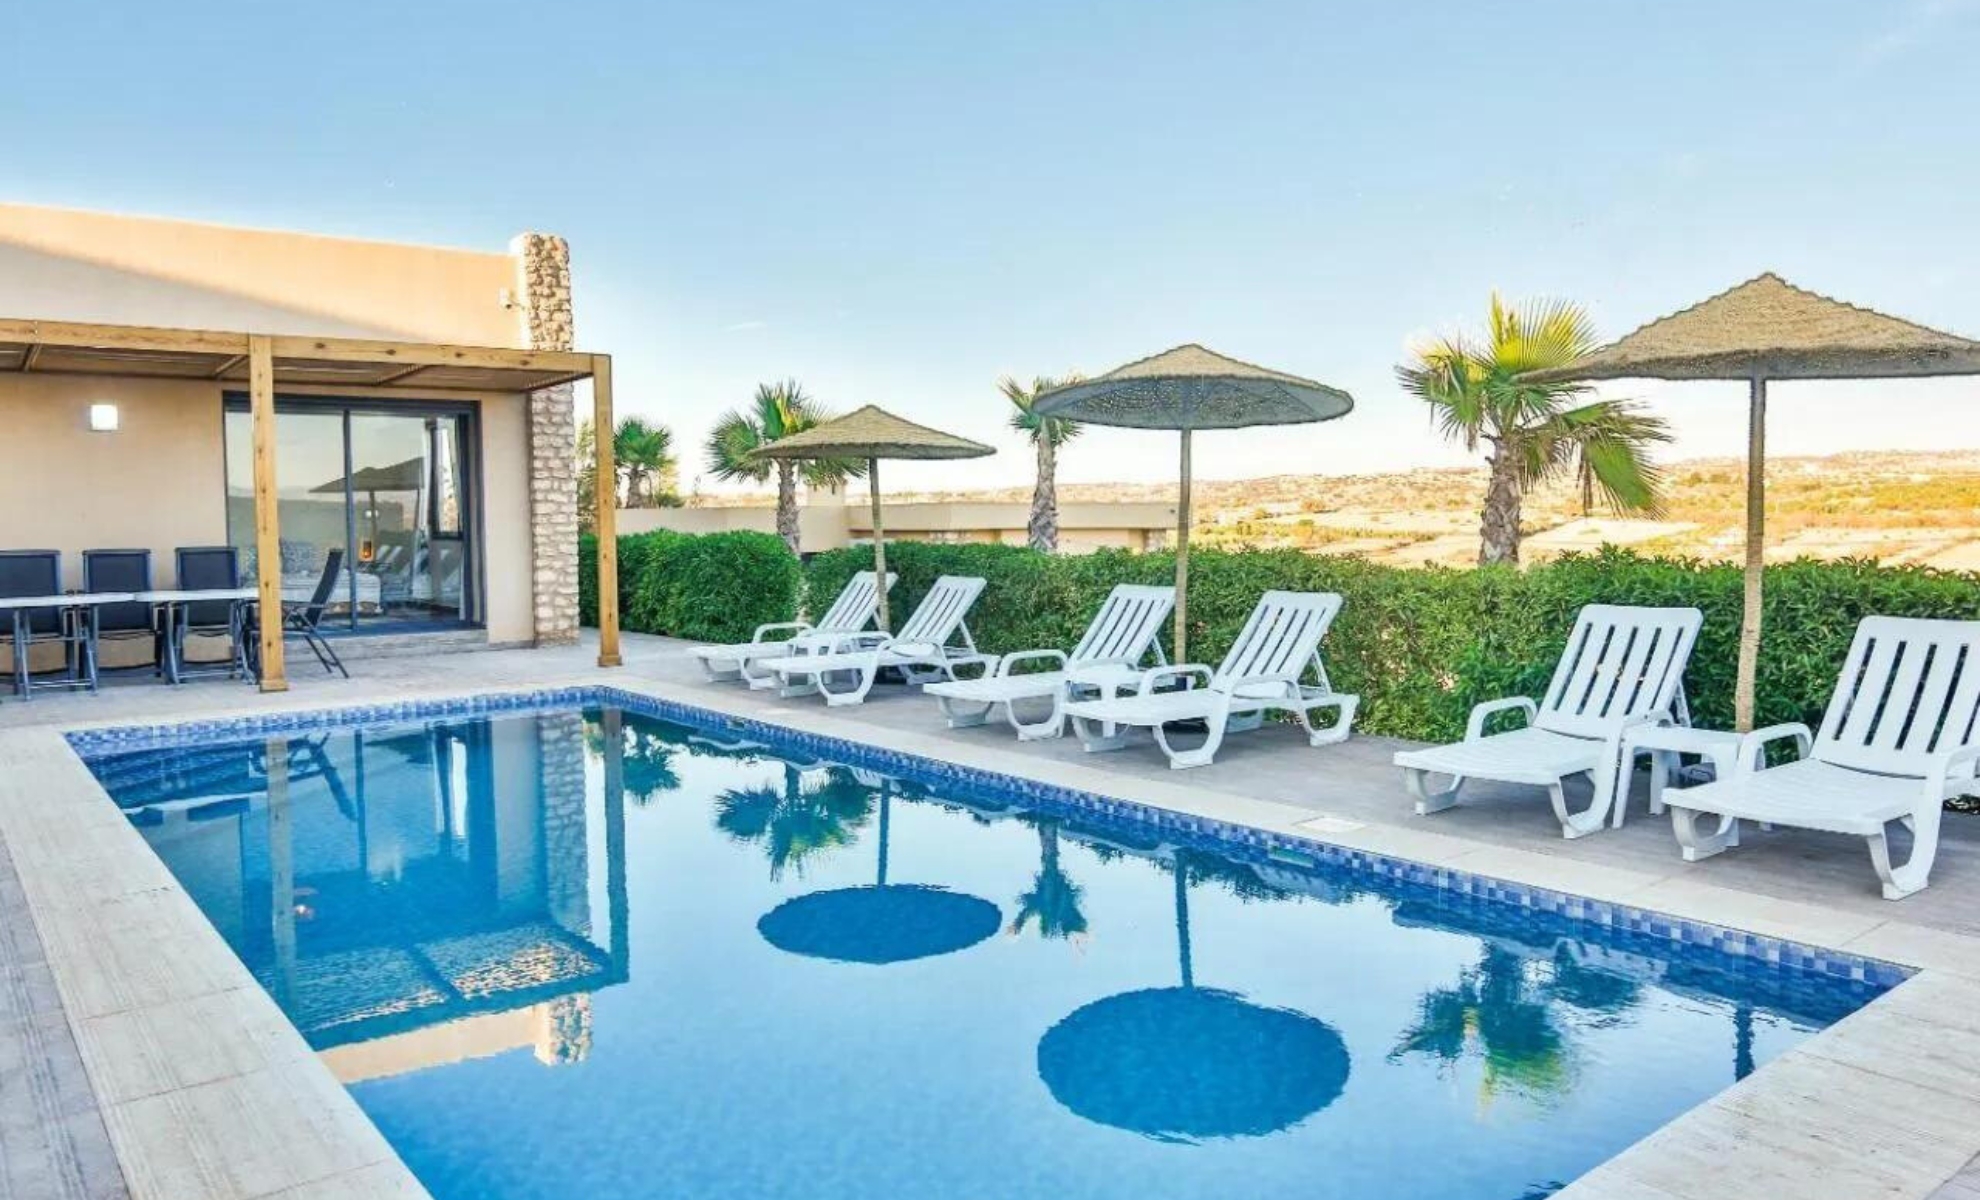 La villa avec piscine près d'Essaouira